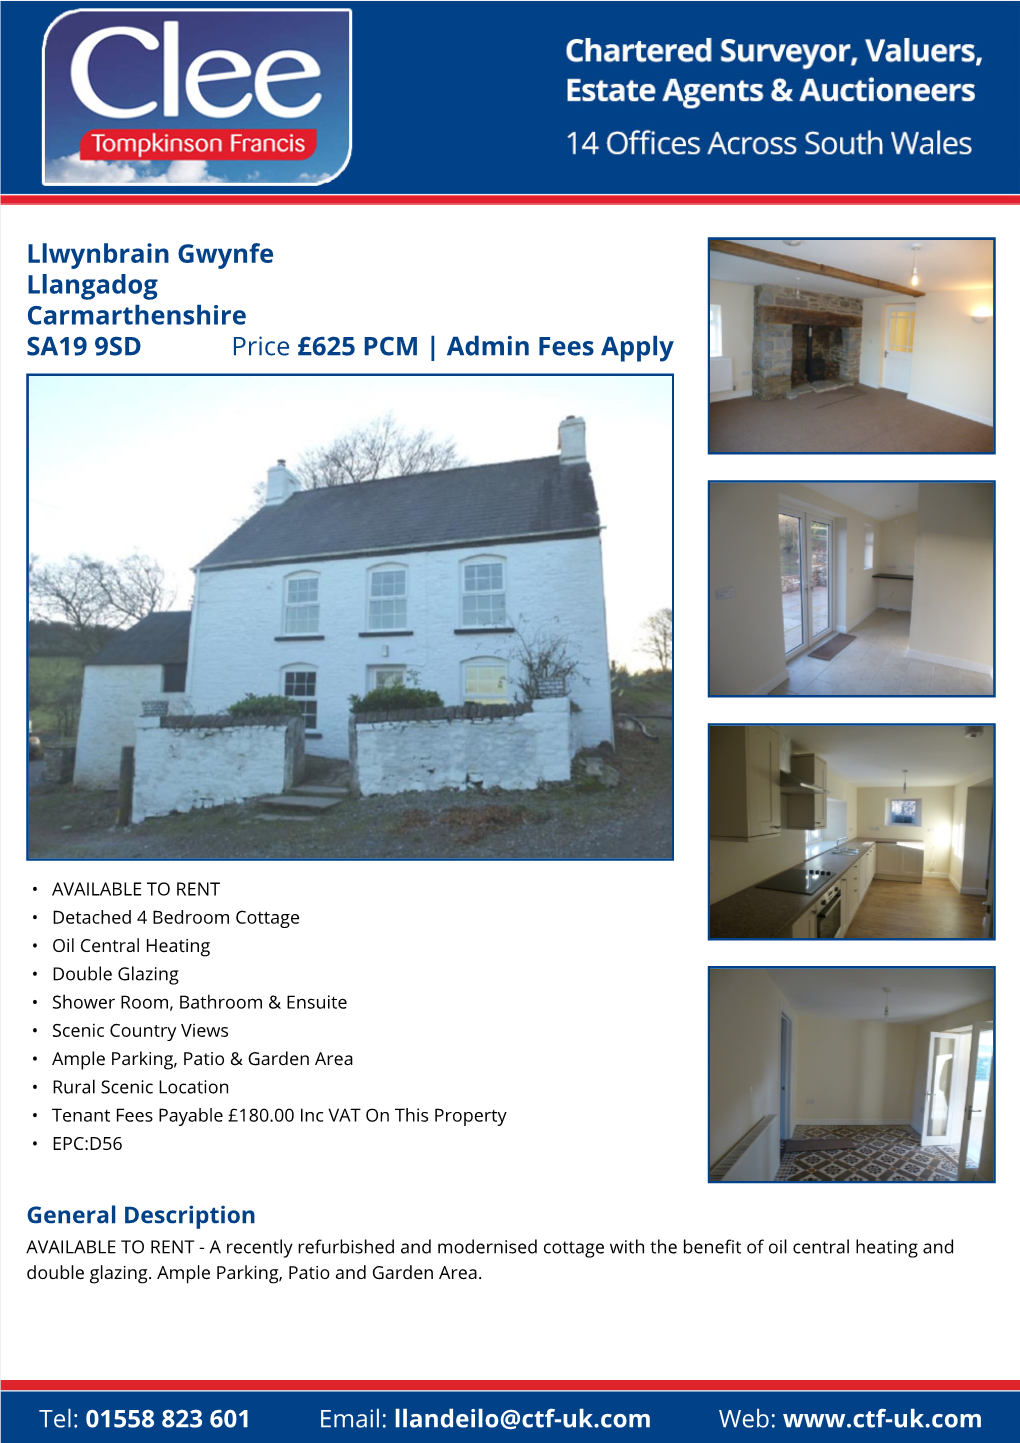 Llwynbrain Gwynfe Llangadog Carmarthenshire SA19 9SD Price £625 PCM | Admin Fees Apply